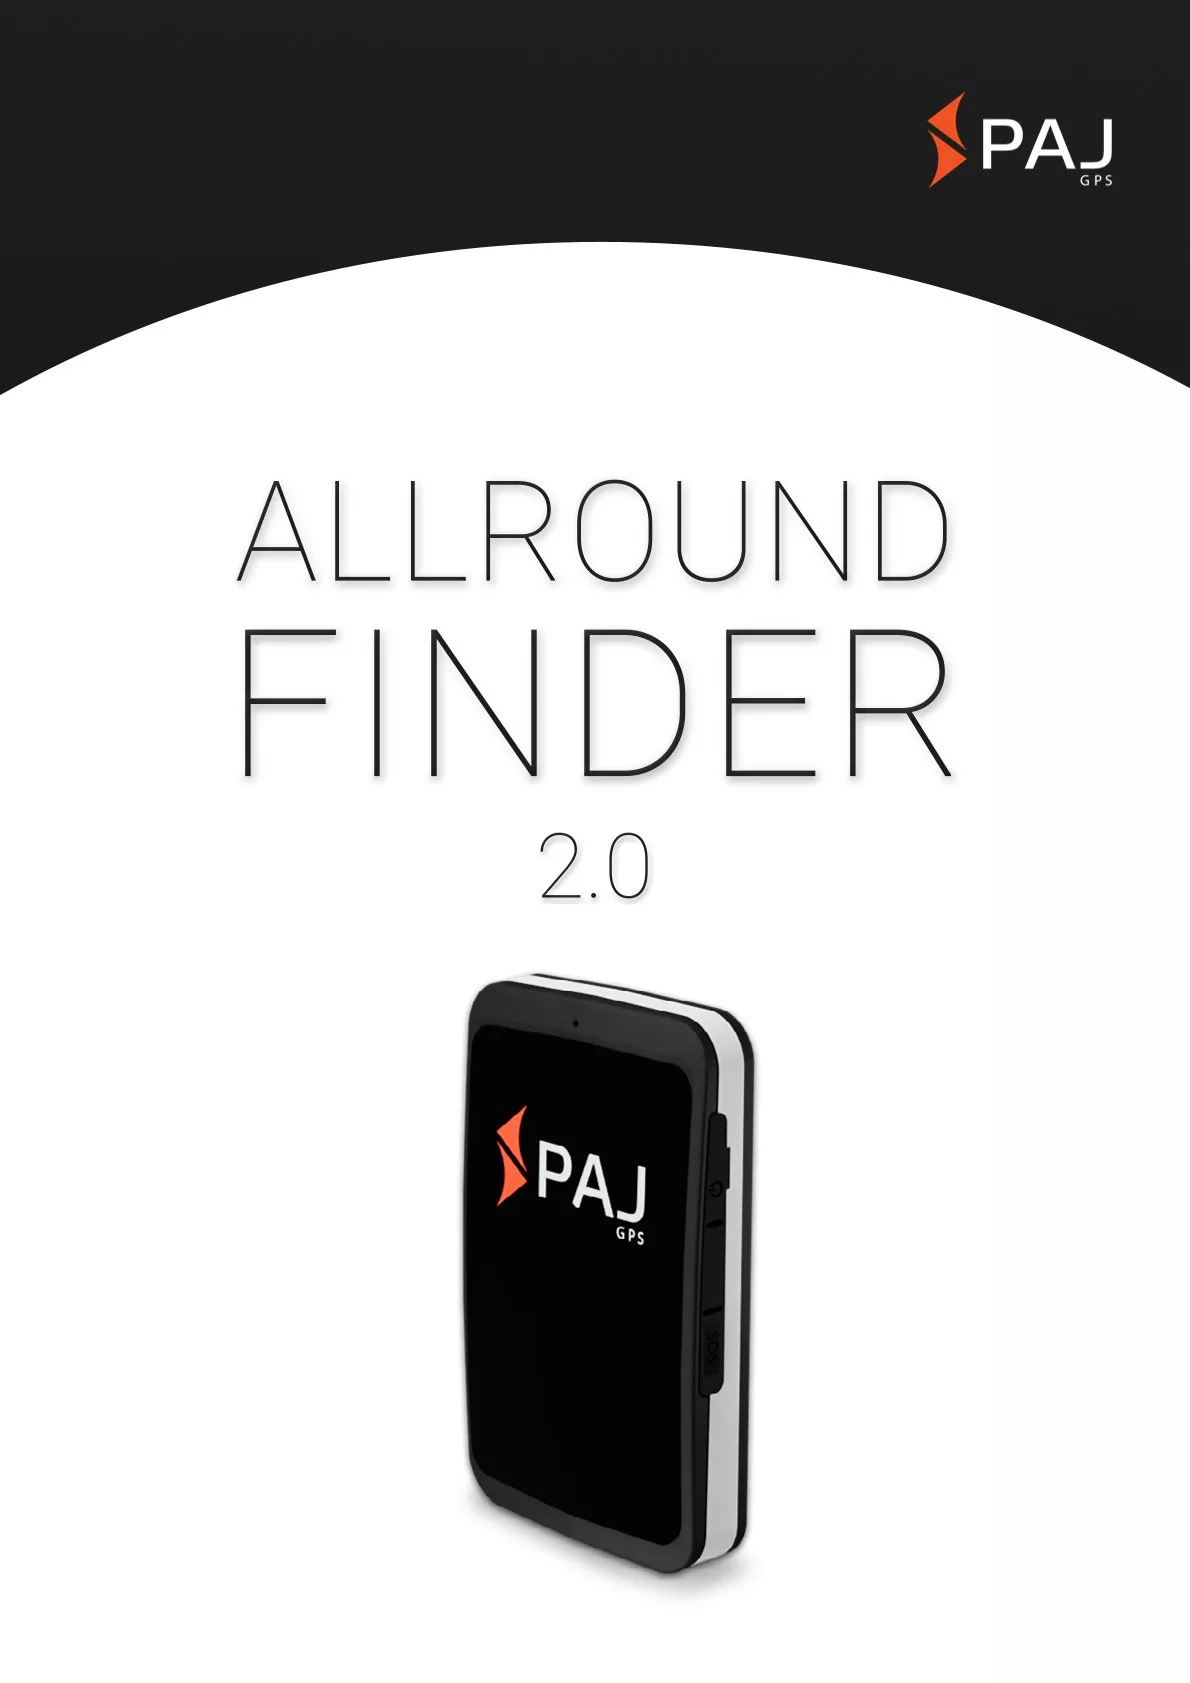 Imagem da capa para folha de dados ALLROUND Finder 2.0